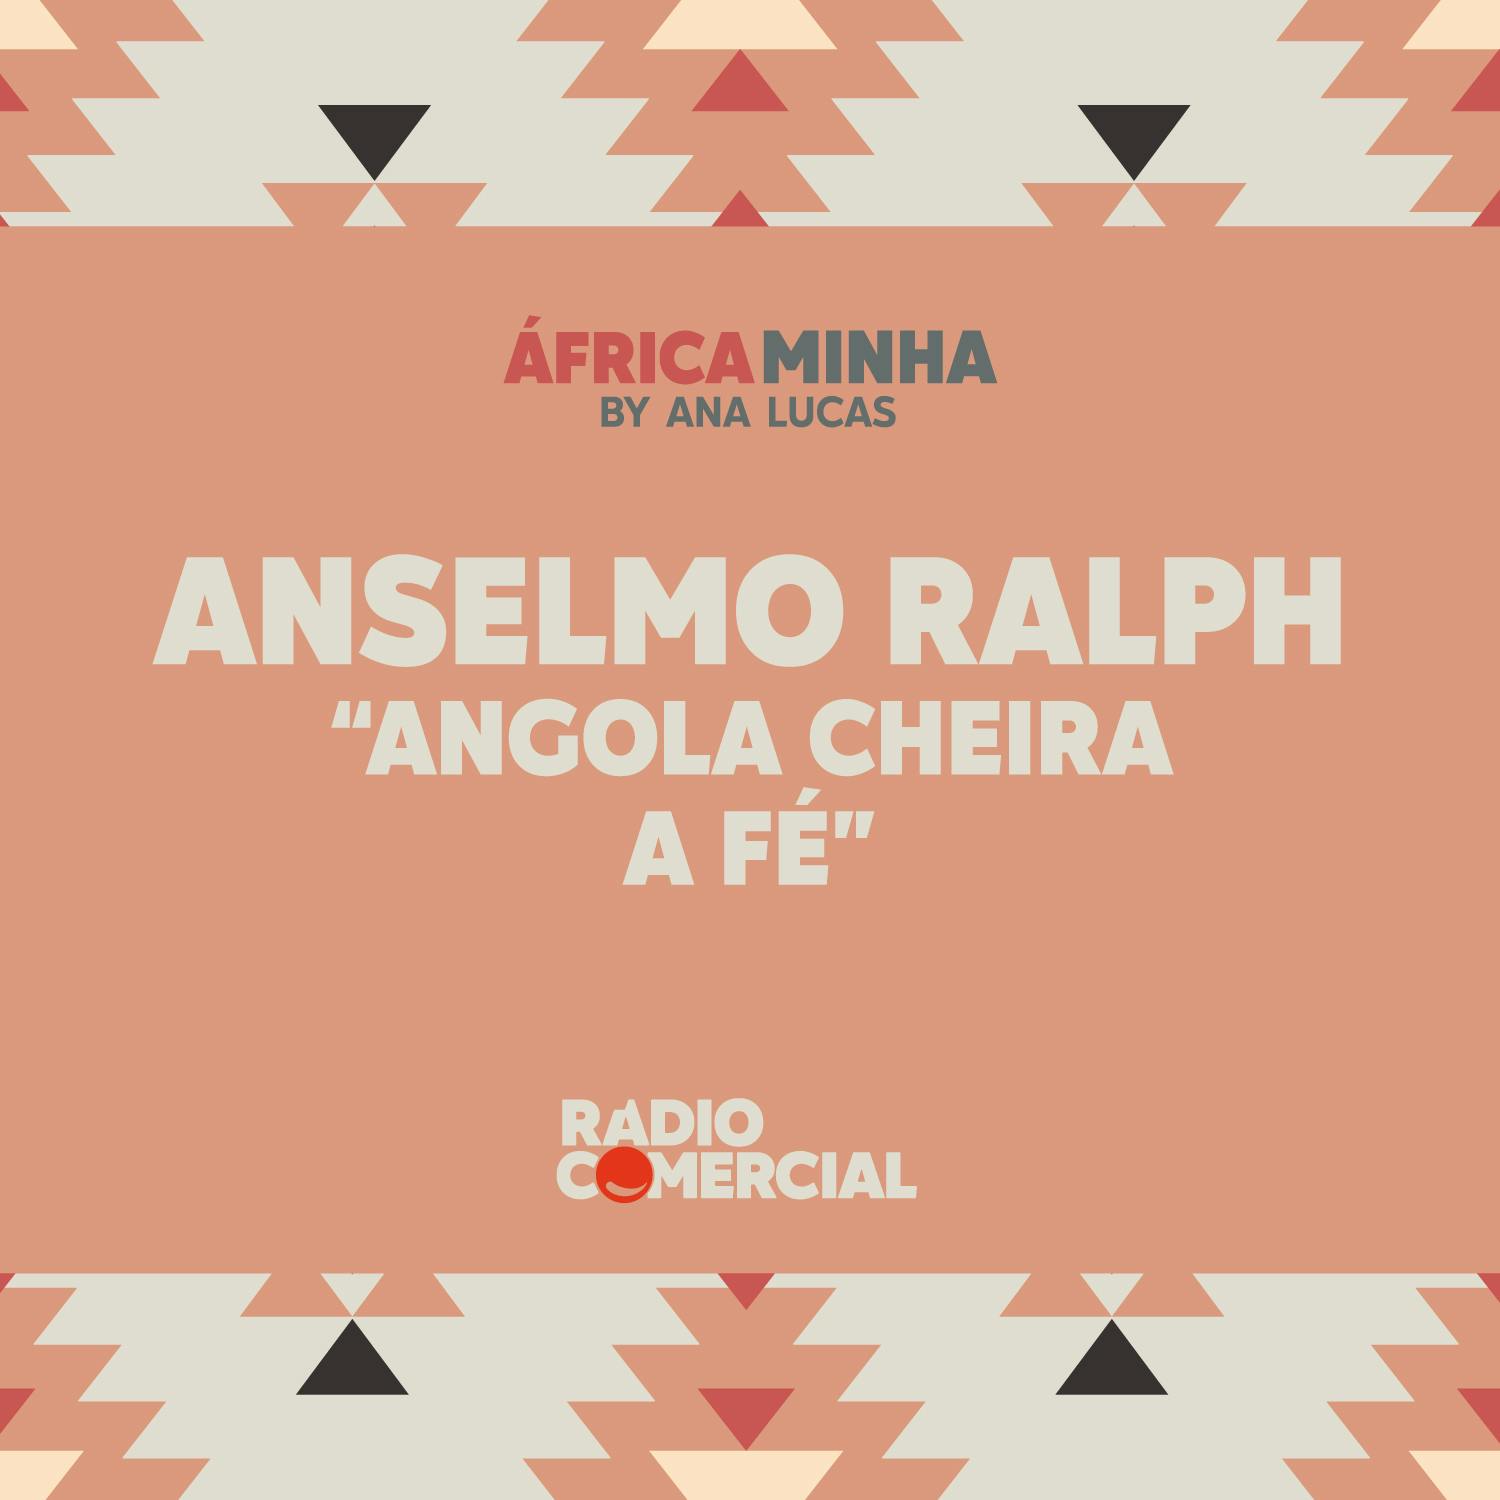 Anselmo Ralph: "Angola cheira a fé"